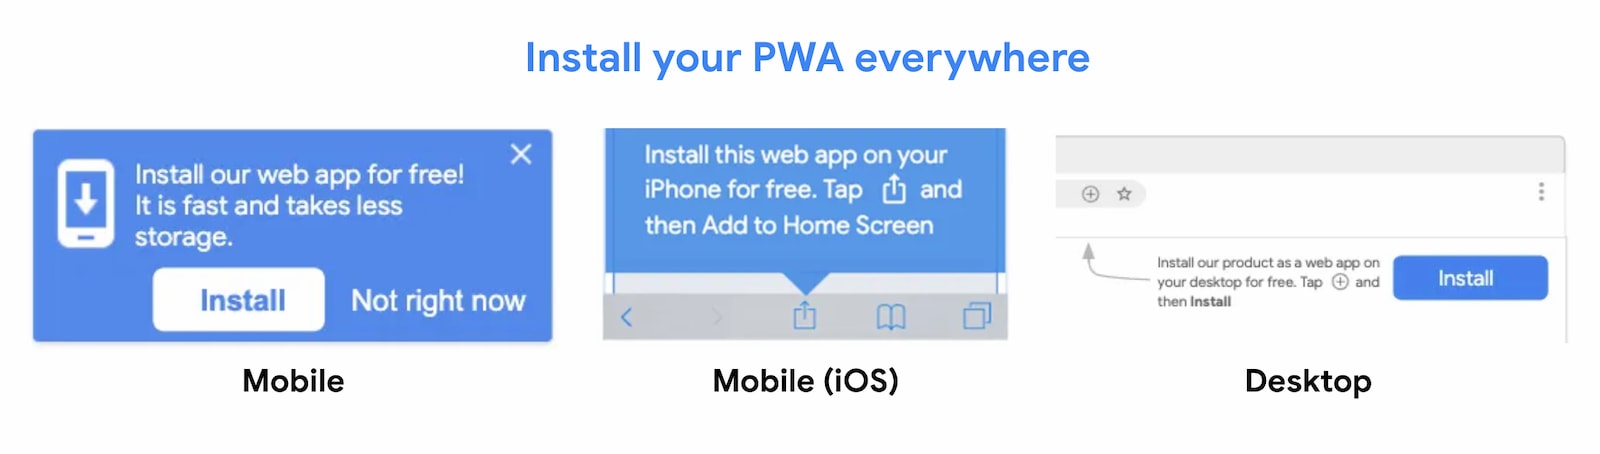 Os PWAs podem ser instalados em qualquer lugar.